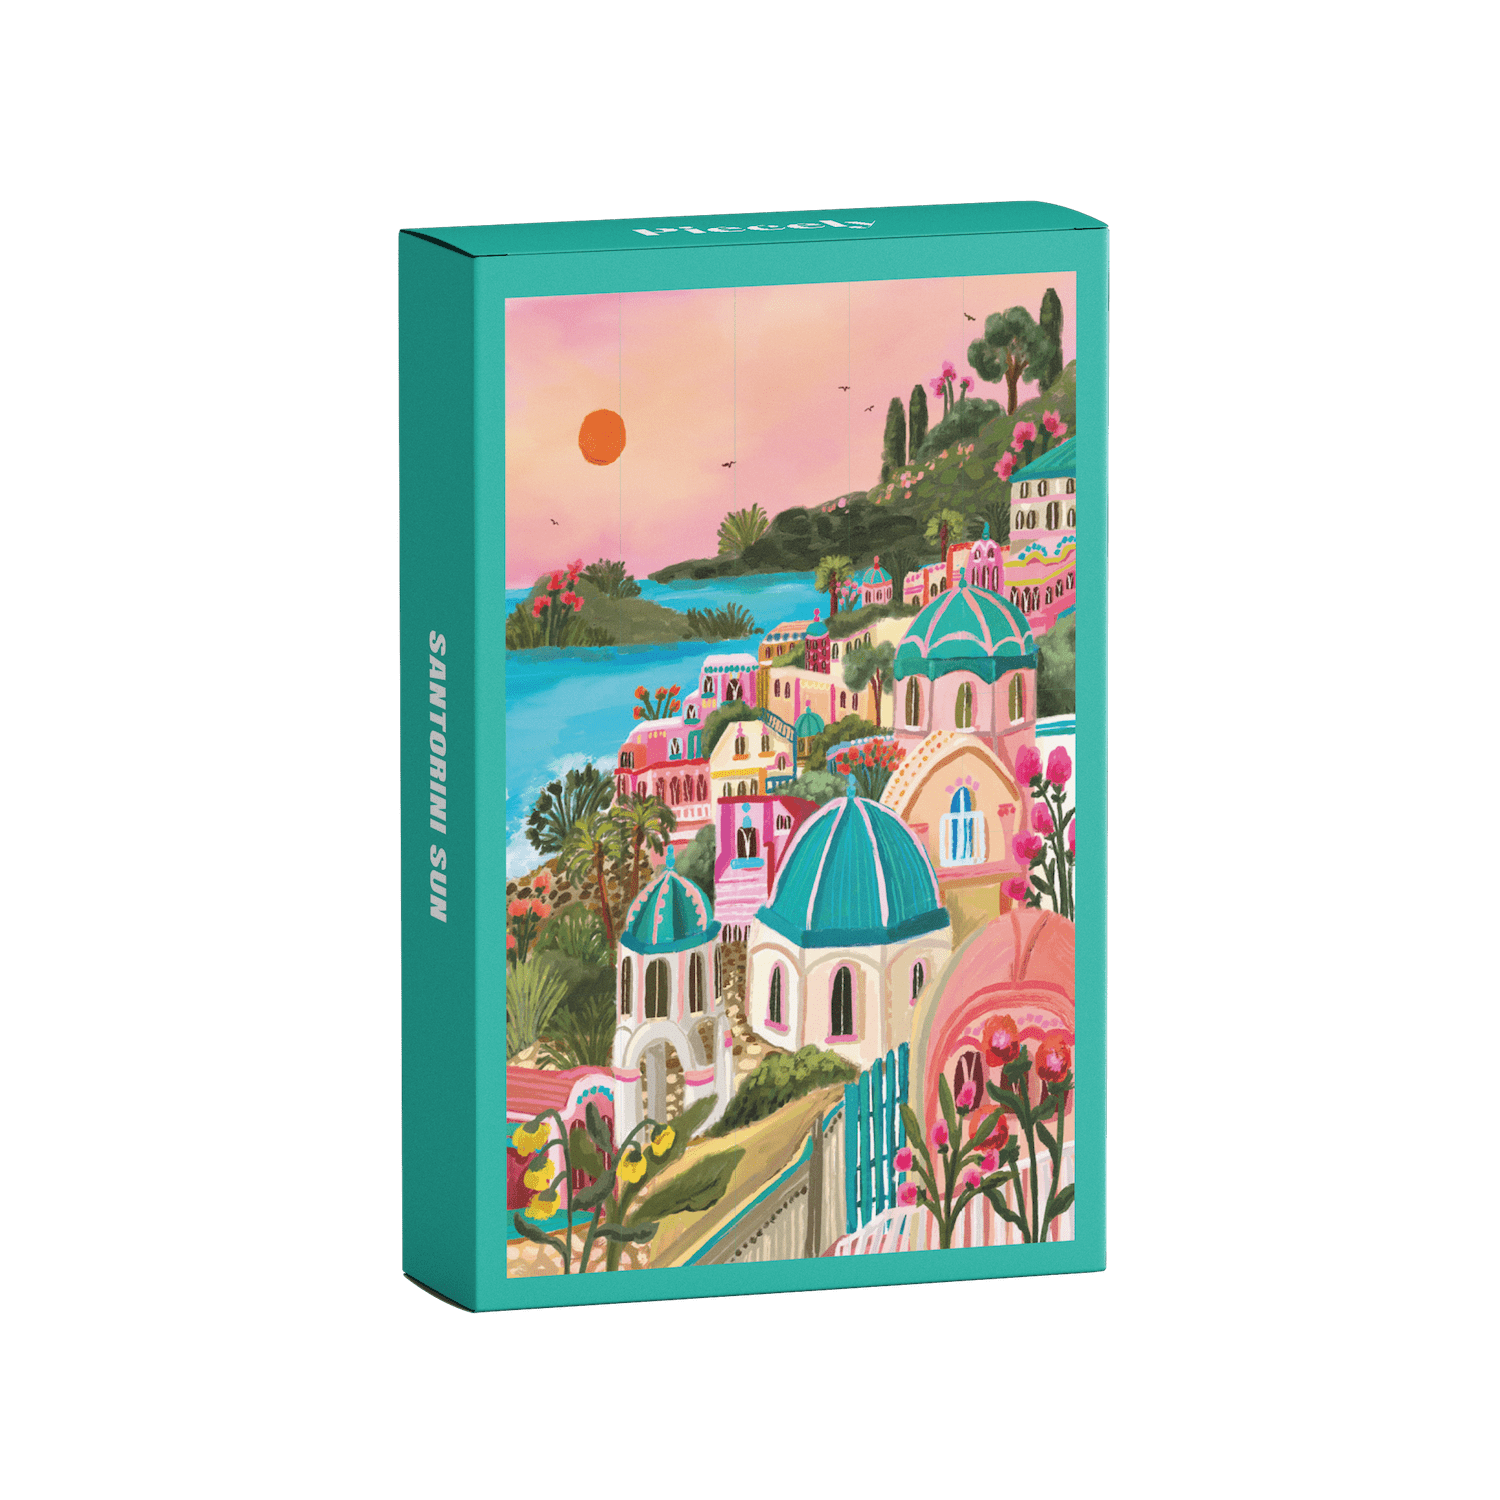 99-teiliges Minipuzzle für Erwachsene, das den griechischen Ort Santorini bei Sonnenuntergang zeigt.